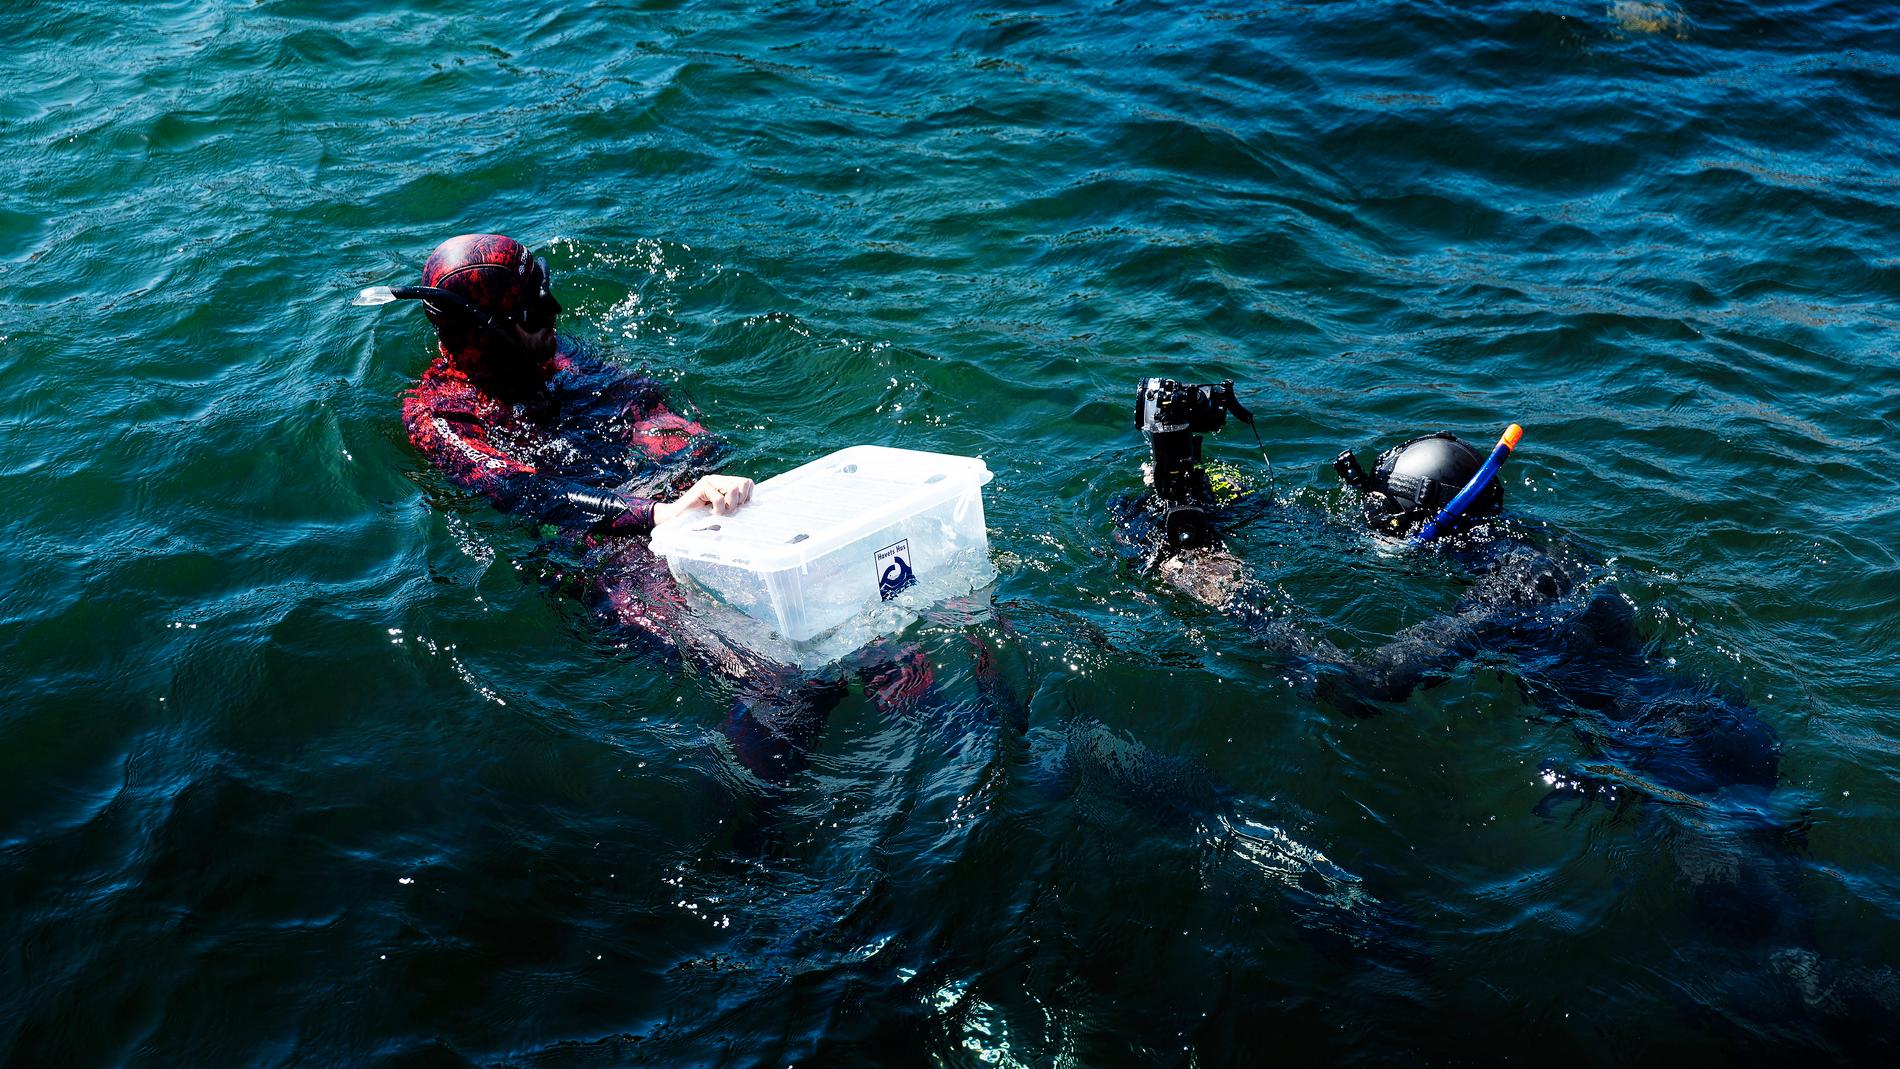 Marinbiologen Martin Stjernstedt bogserar ur några hajar i en plastlåda för att släppa dem på ett lämpligt ställe. Akvarieteknikern Elias Neuman assisterar. Många åskådare följde hajsläppet från kajen.